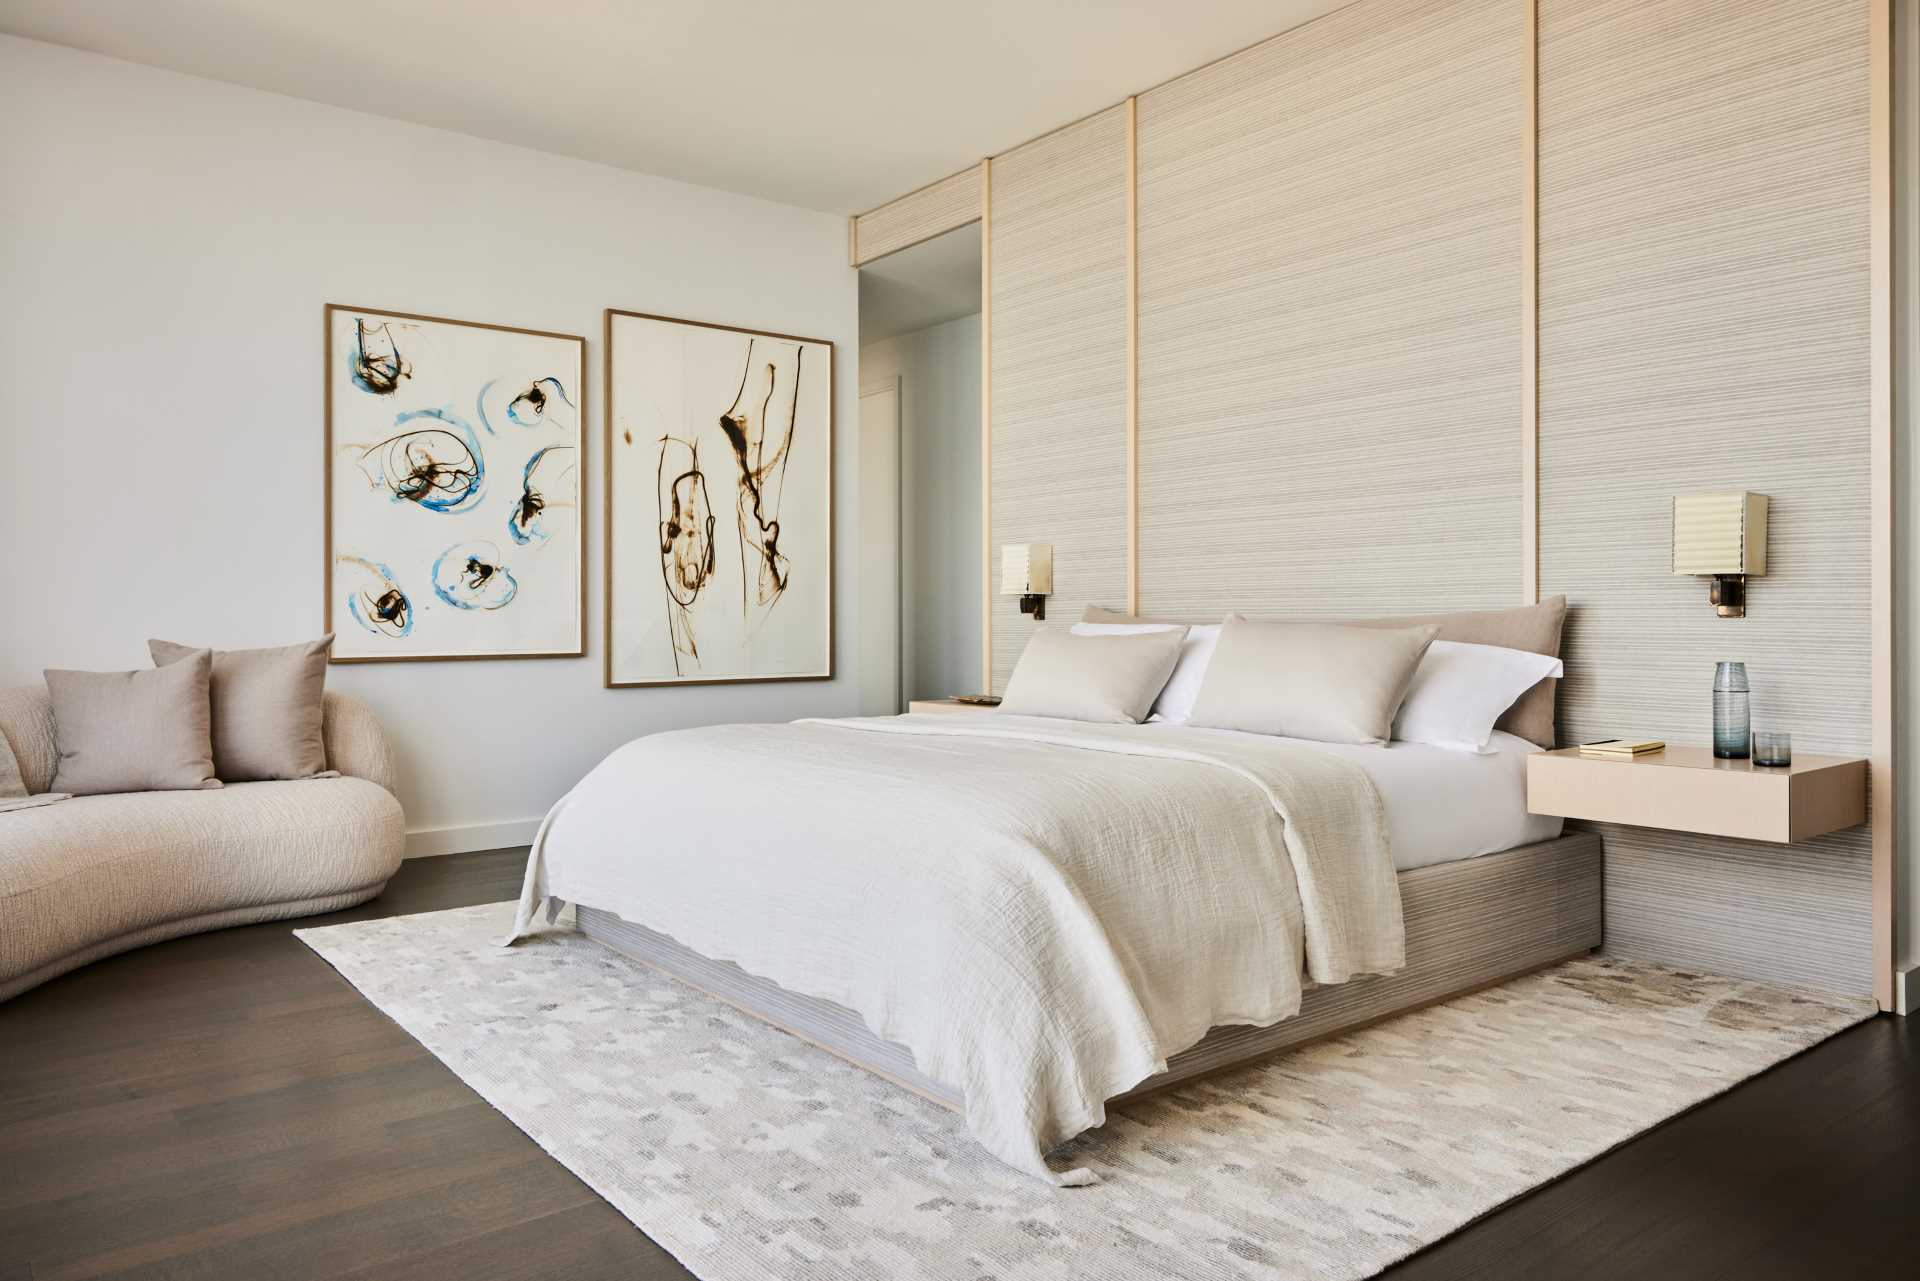 یک اتاق خواب مدرن با پالت رنگی خنثی و ،مت نشیمن کوچک.